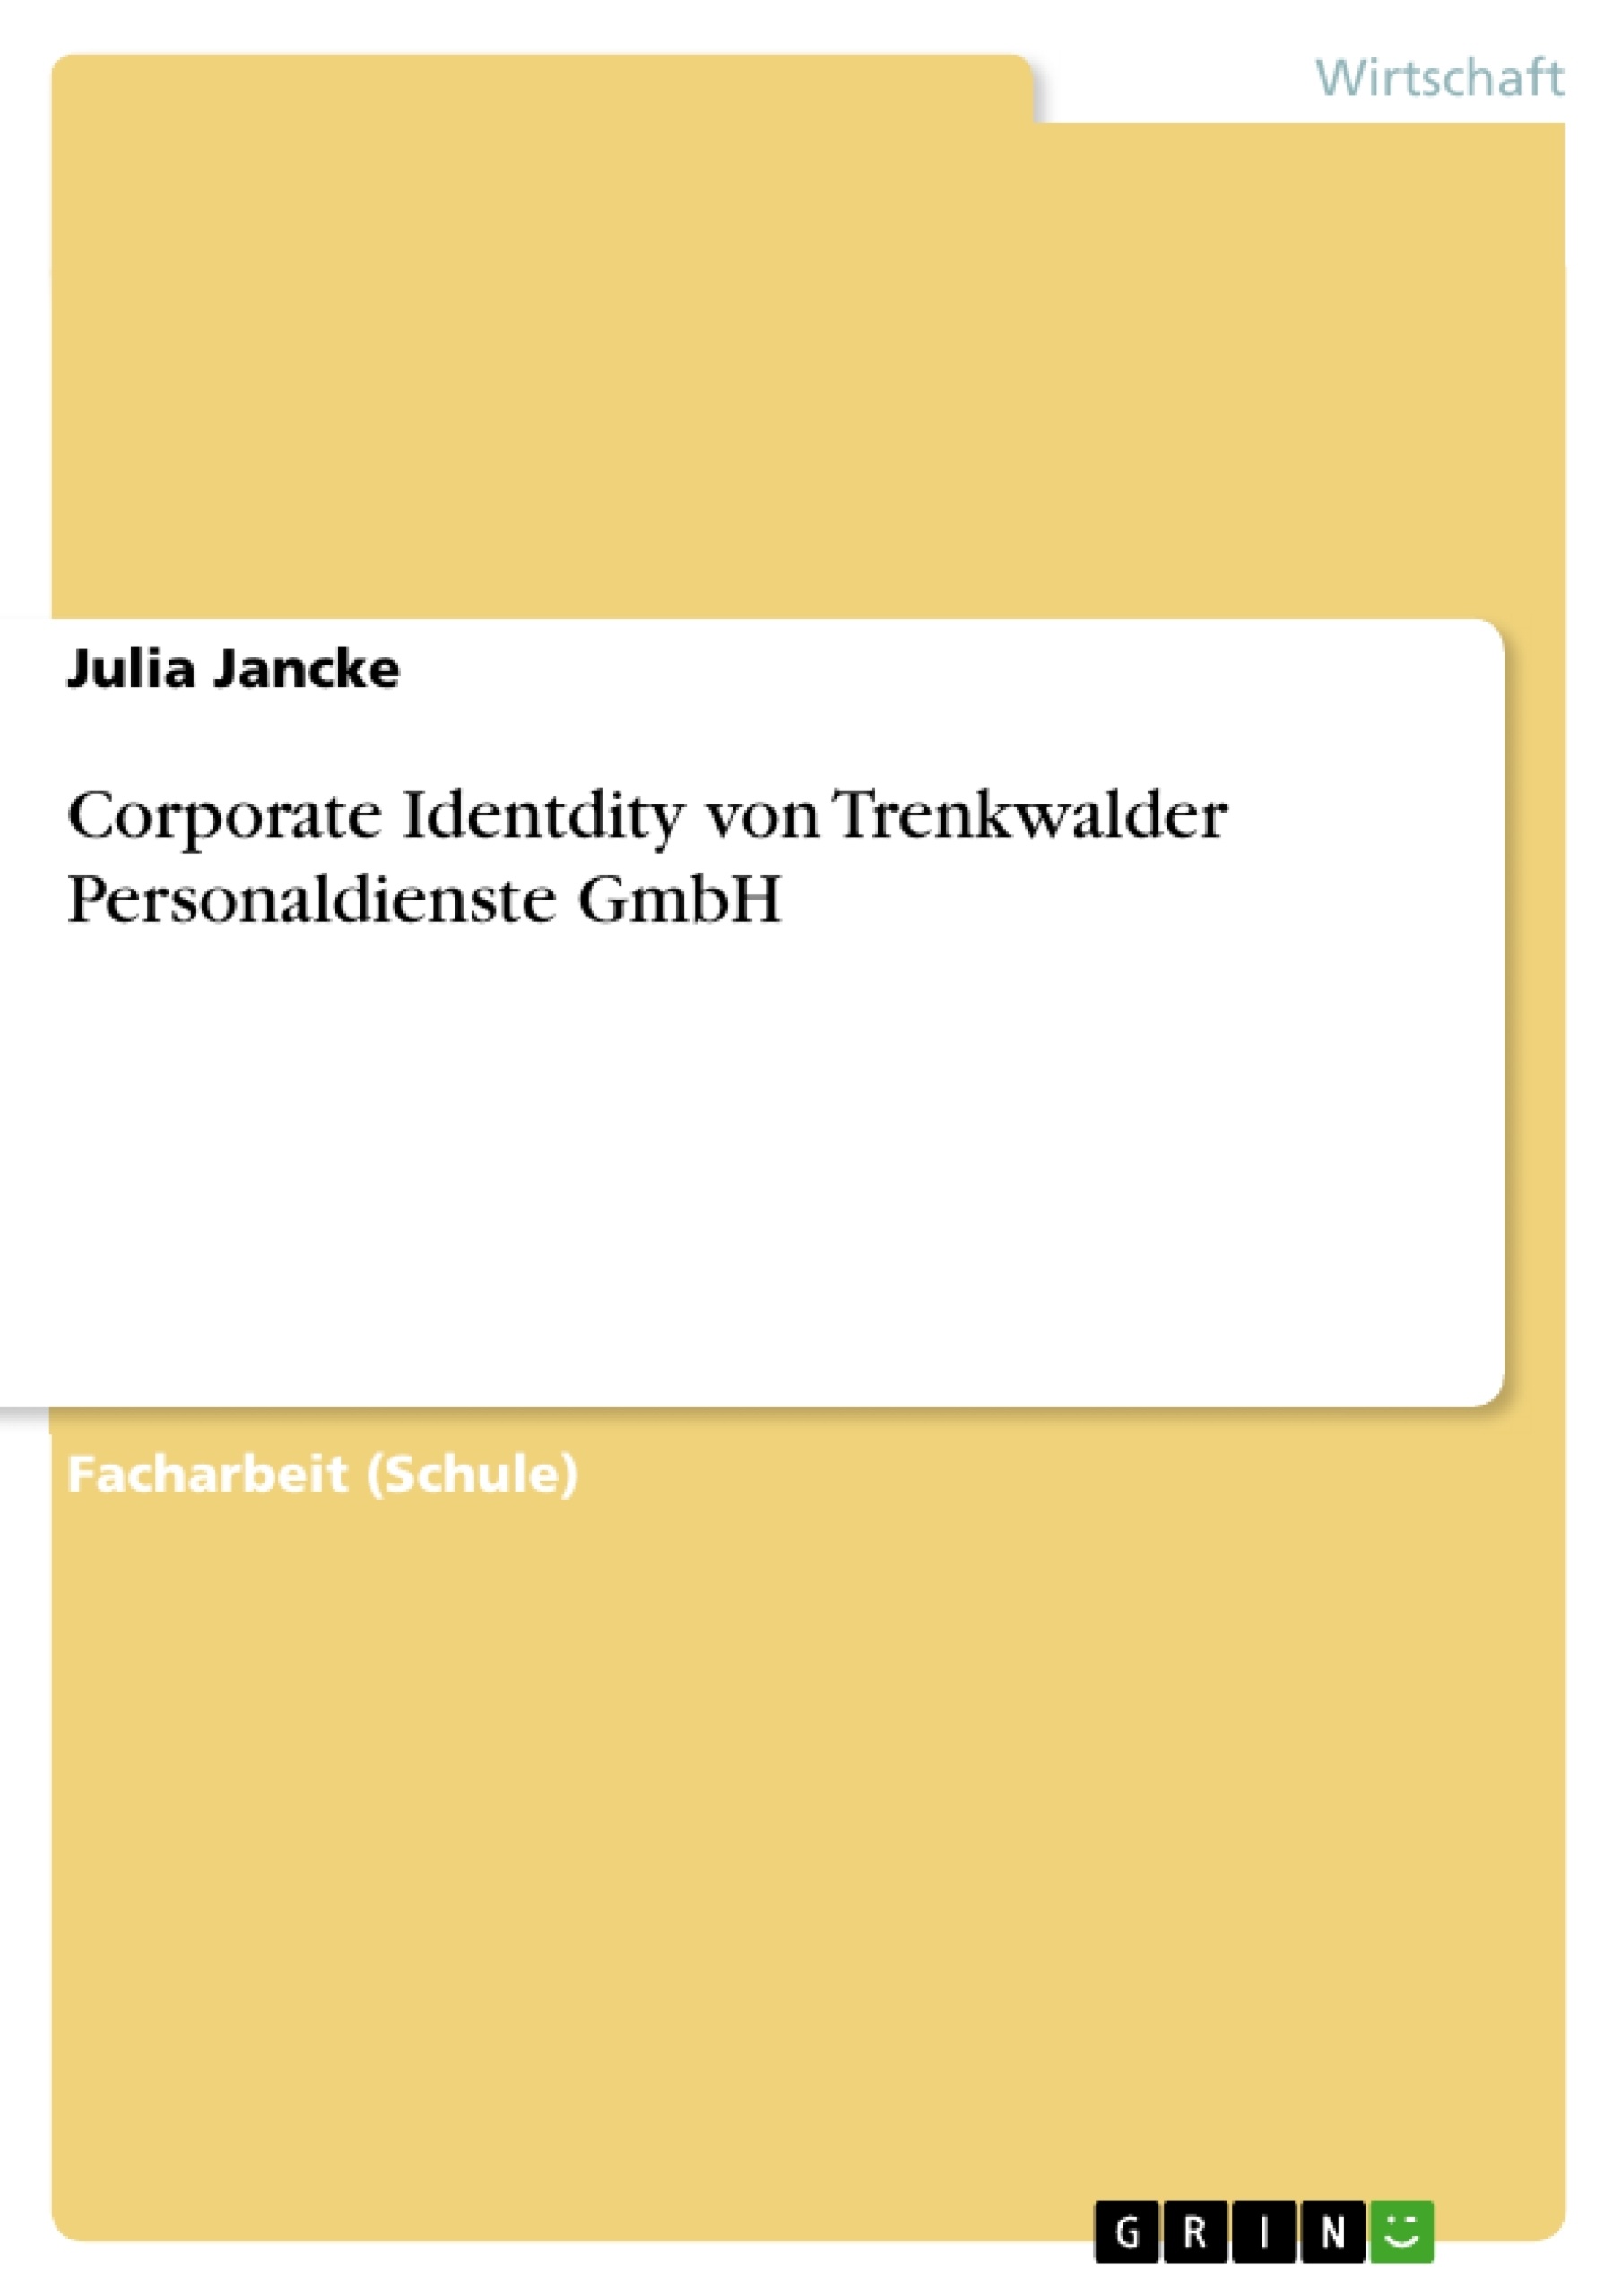 Título: Corporate Identdity von Trenkwalder Personaldienste GmbH